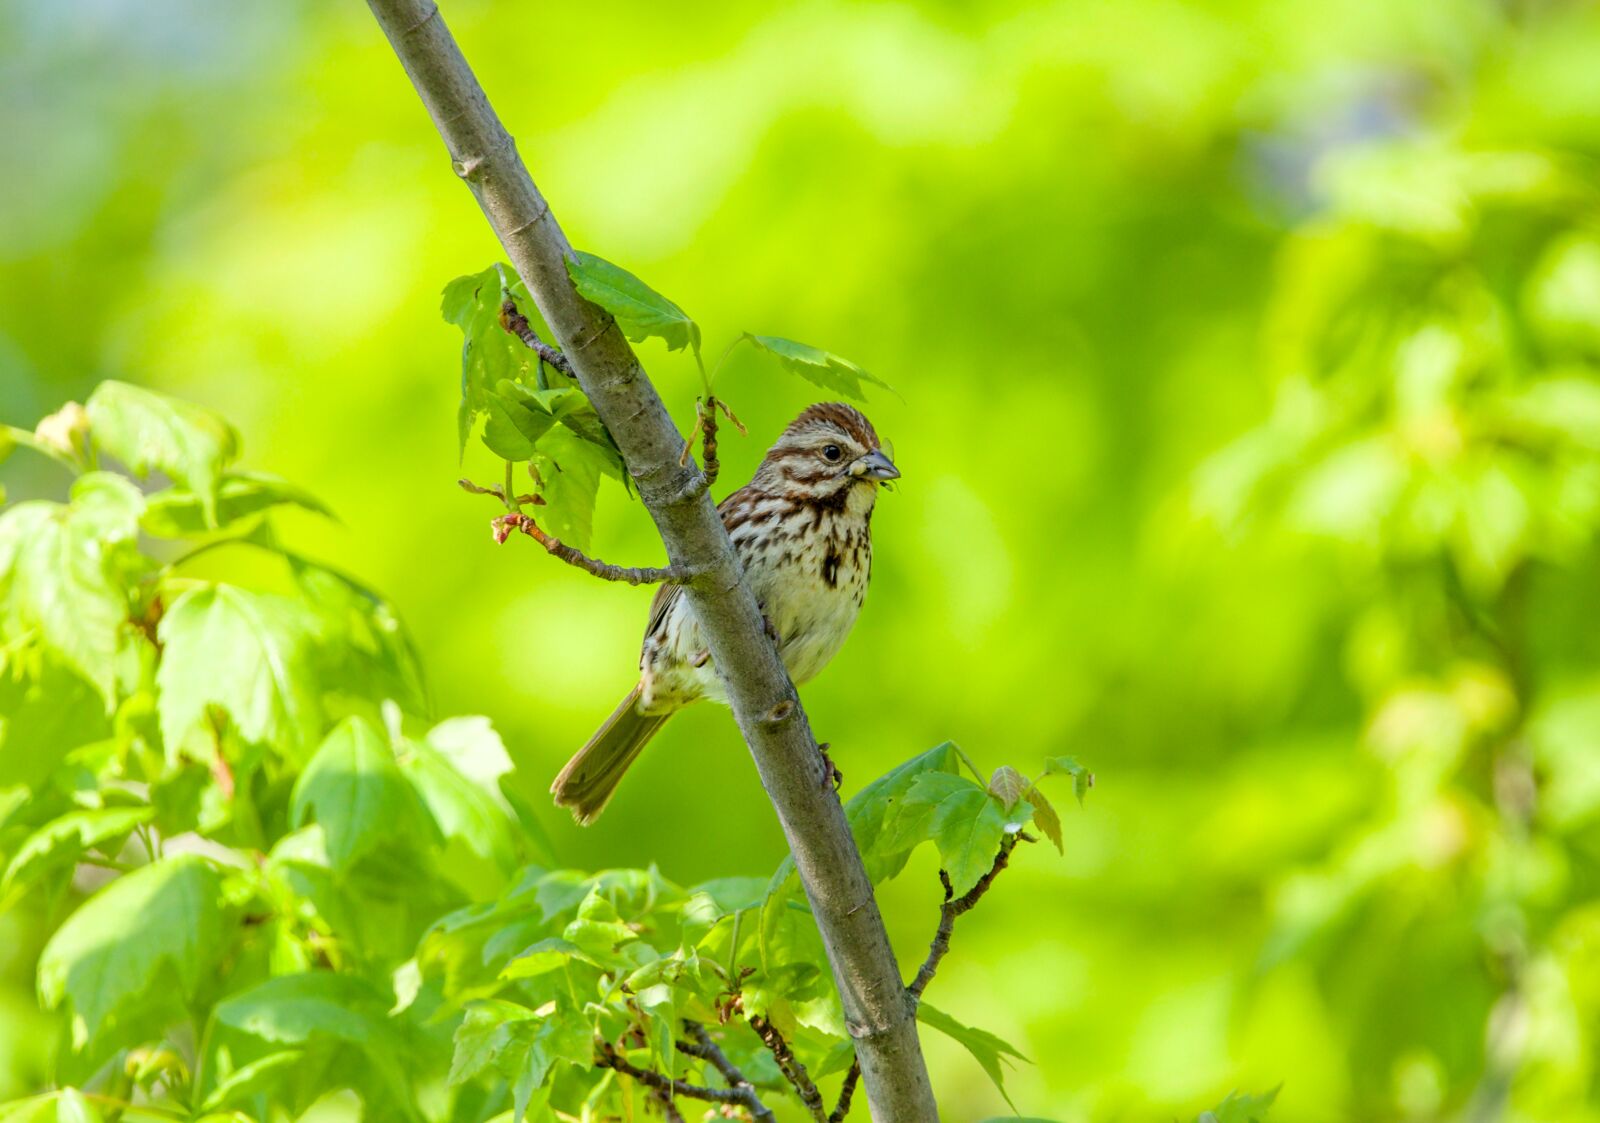 Canon EOS 800D (EOS Rebel T7i / EOS Kiss X9i) sample photo. Song sparrow, sparrow, bird photography